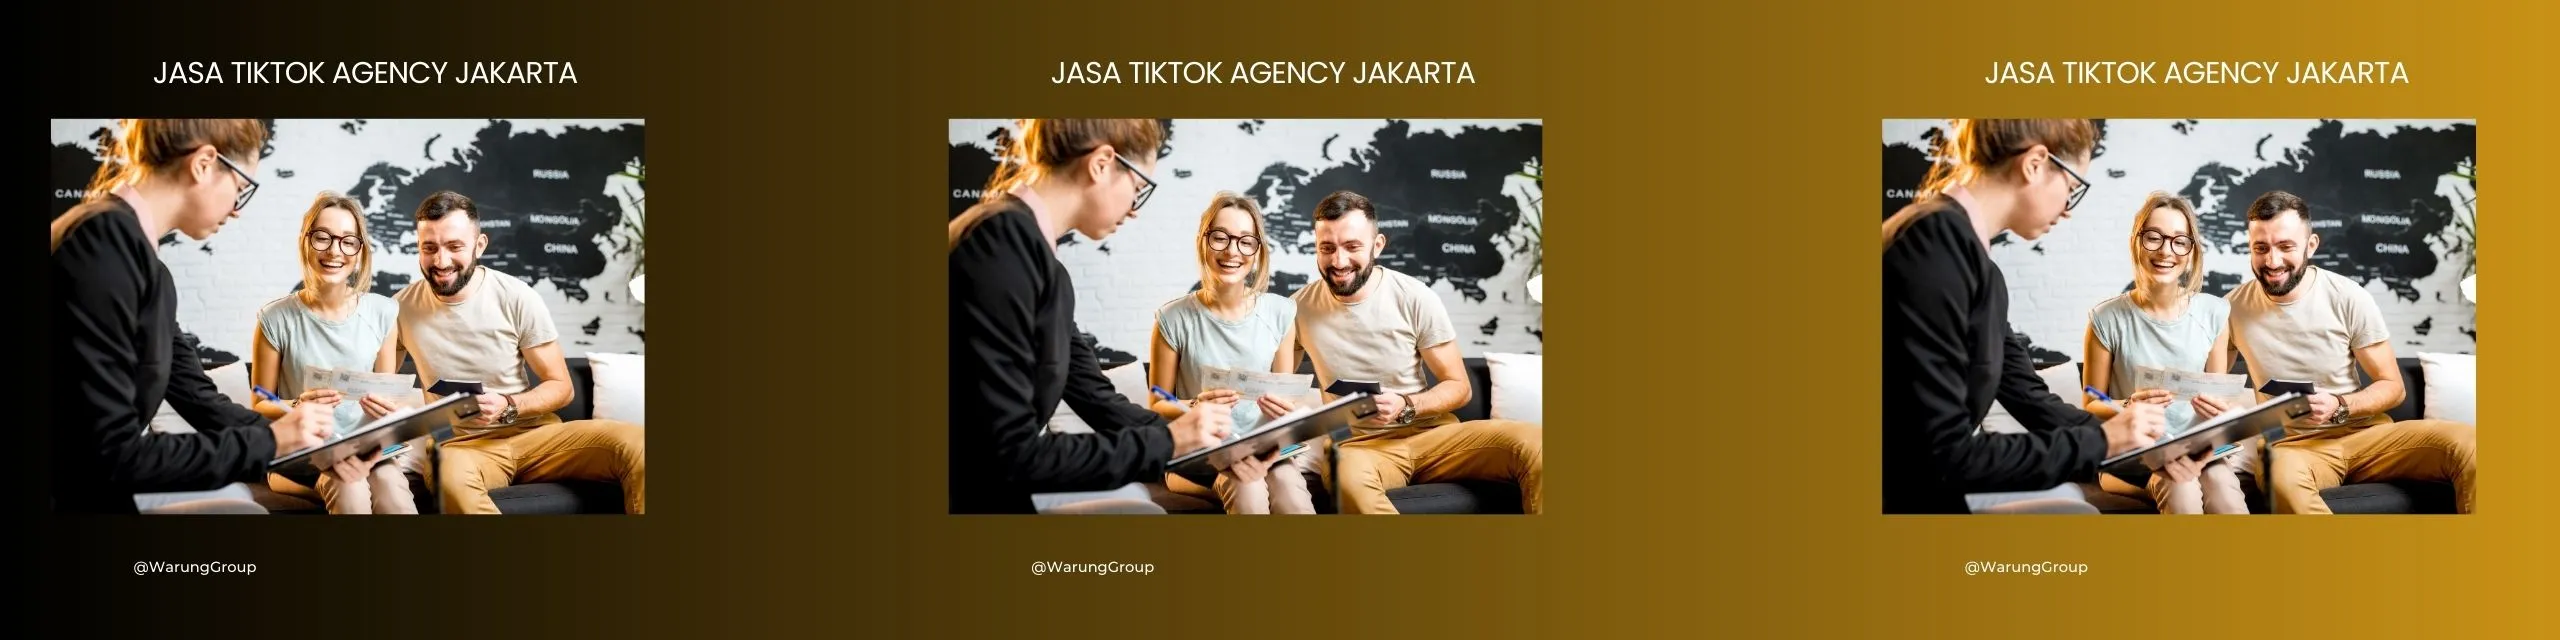 Jasa Tiktok Agency Jakarta